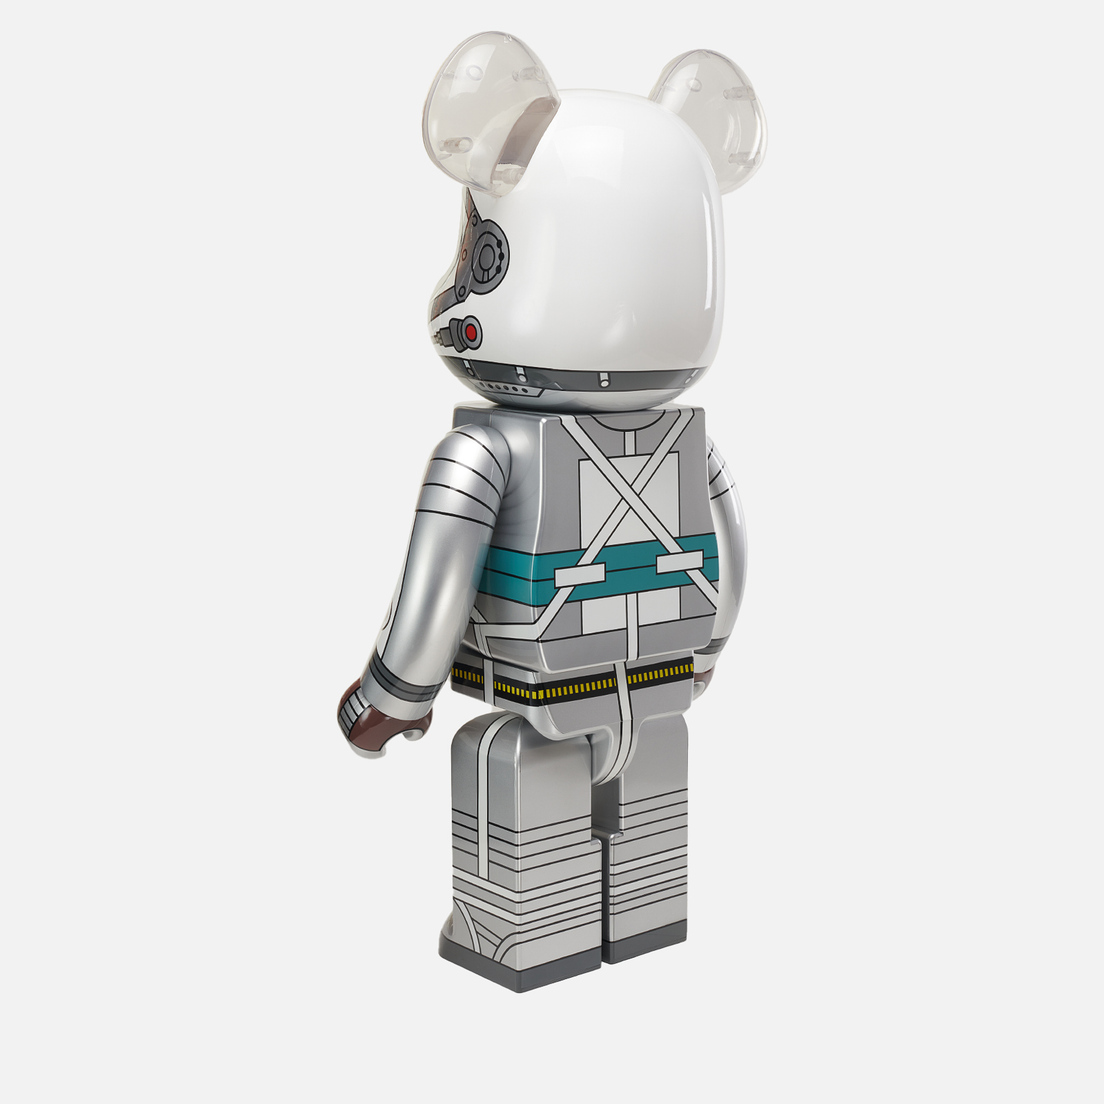 Medicom Toy Игрушка Project Mercury Astronaut 1000%